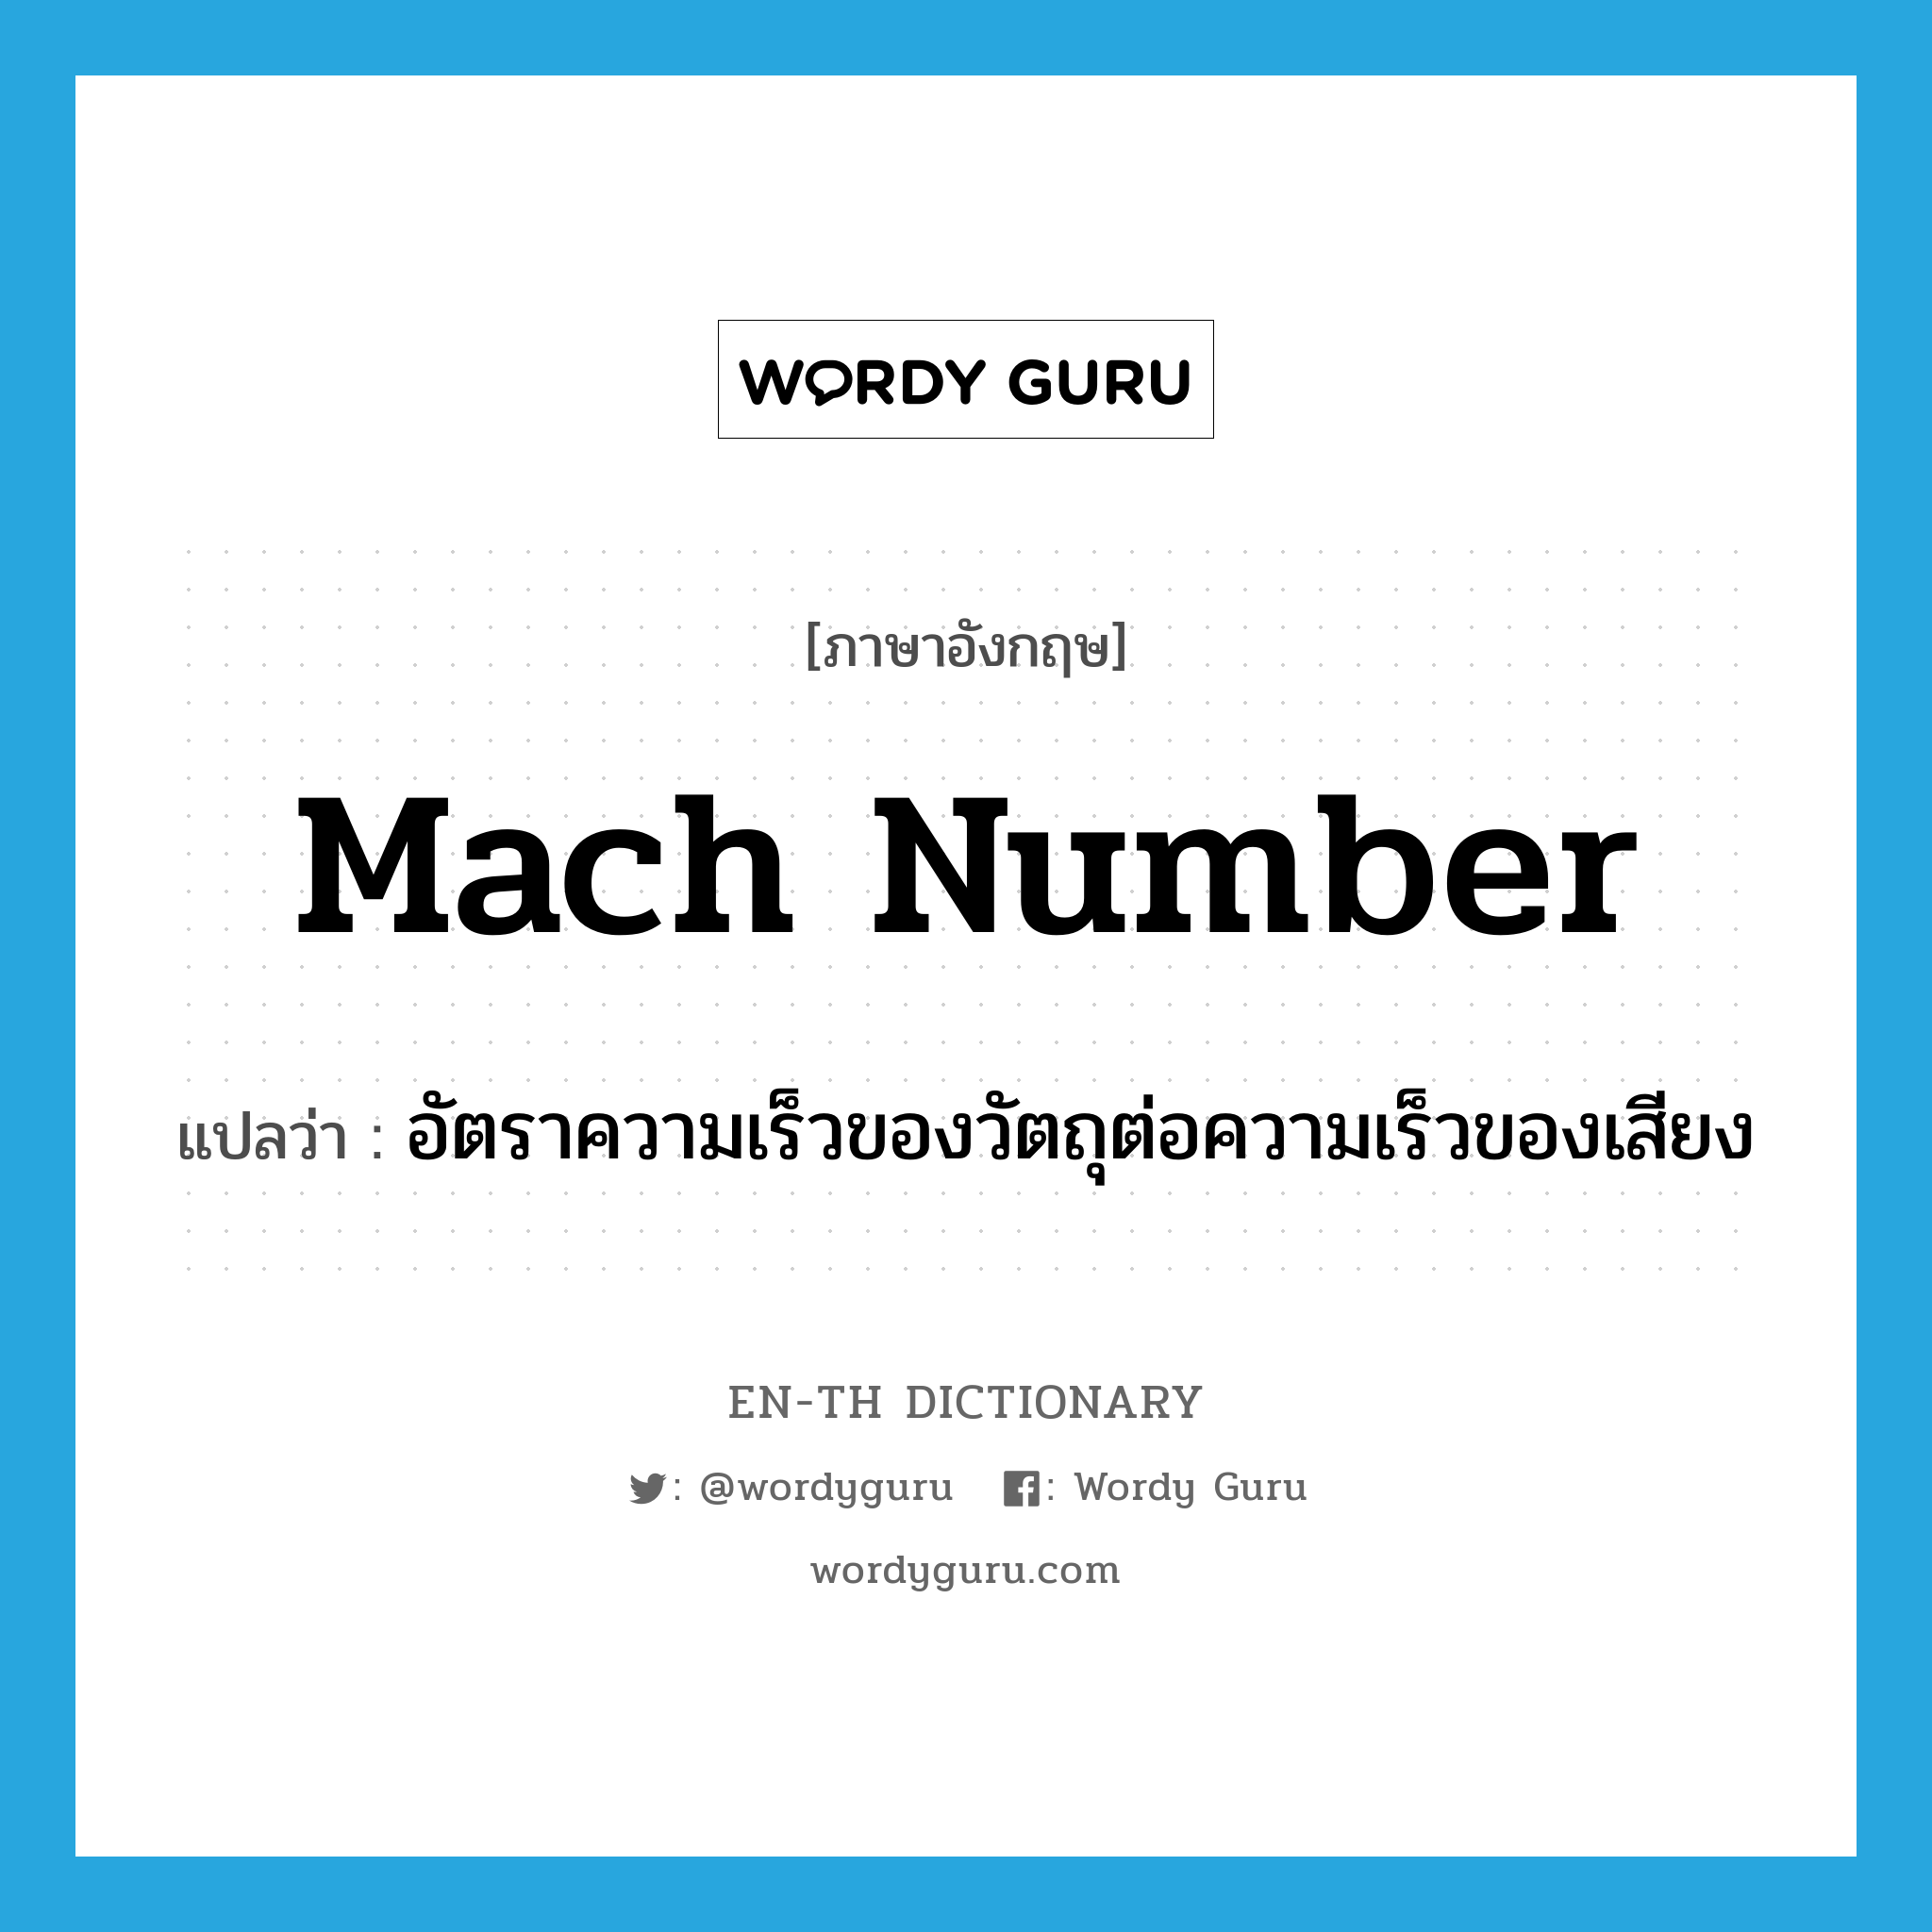 Mach number แปลว่า?, คำศัพท์ภาษาอังกฤษ Mach number แปลว่า อัตราความเร็วของวัตถุต่อความเร็วของเสียง ประเภท N หมวด N